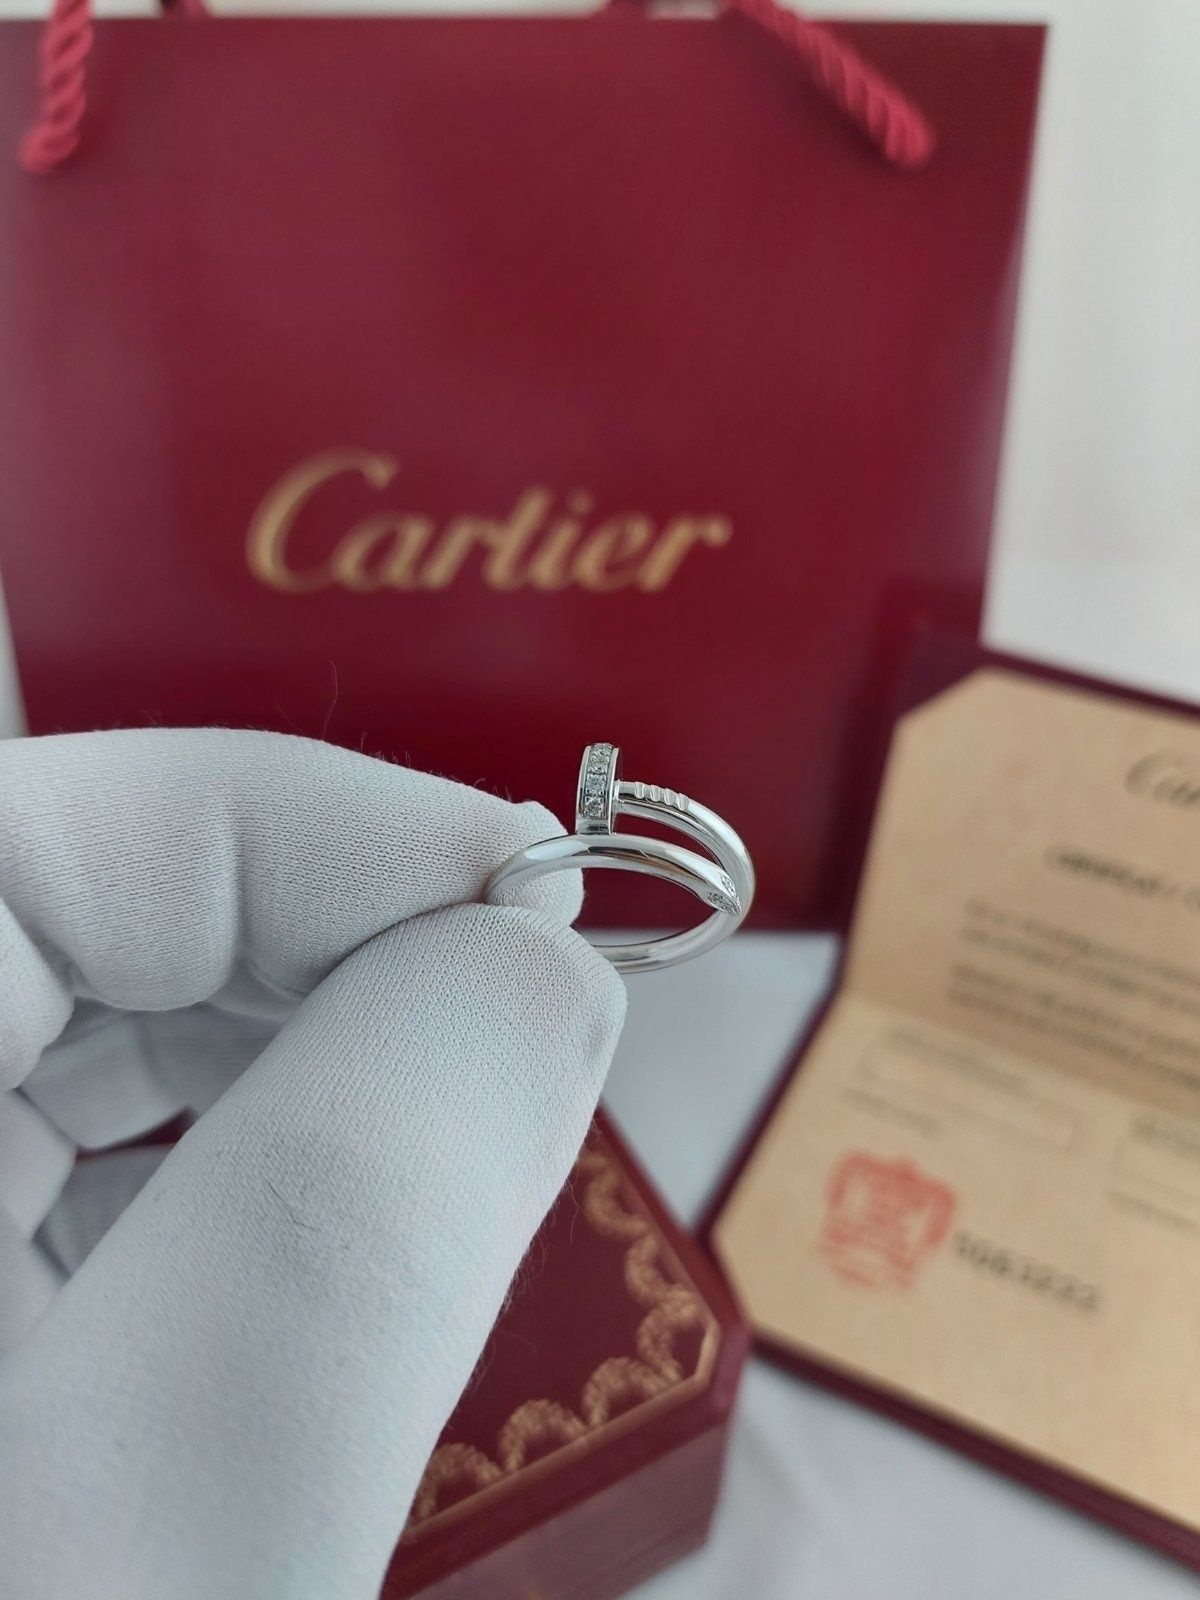 Золотое кольцо Just un Clou  (Гвоздь) с бриллиантами в стиле Cartier